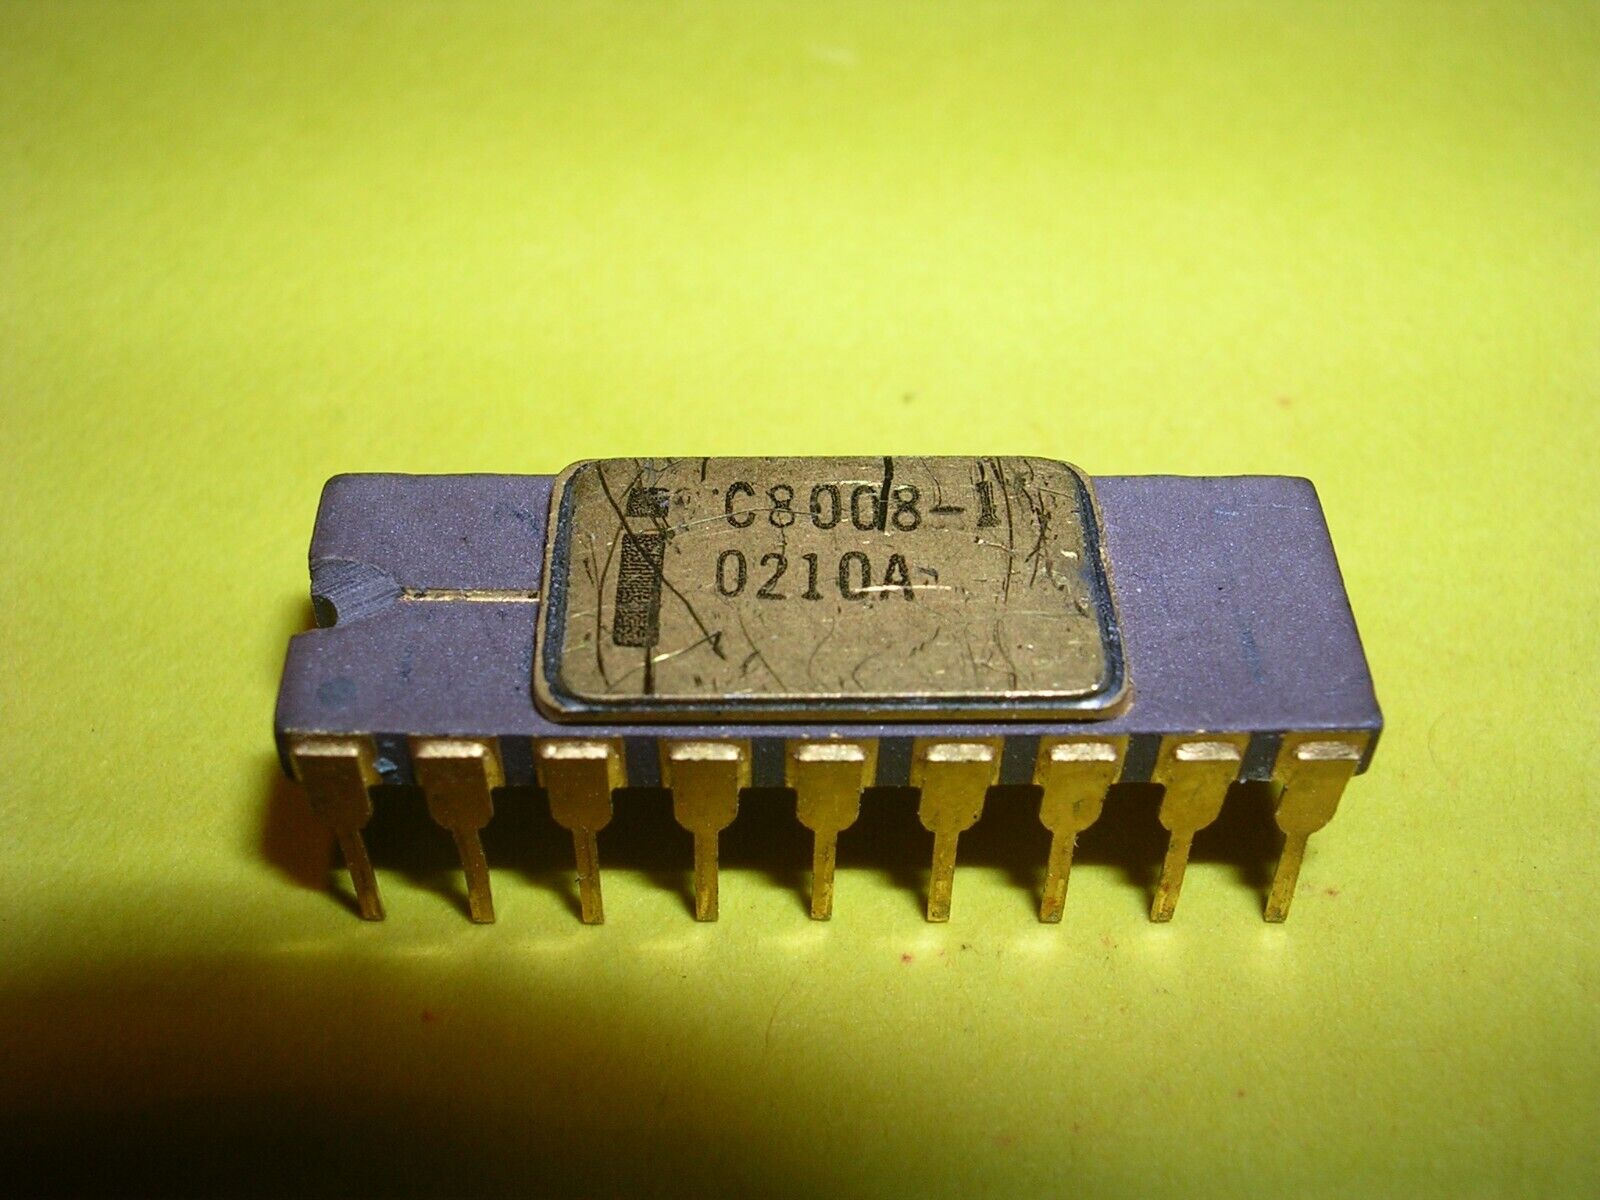 Intel C8008-1 Microprocessor / CPU in Brown Ceramic